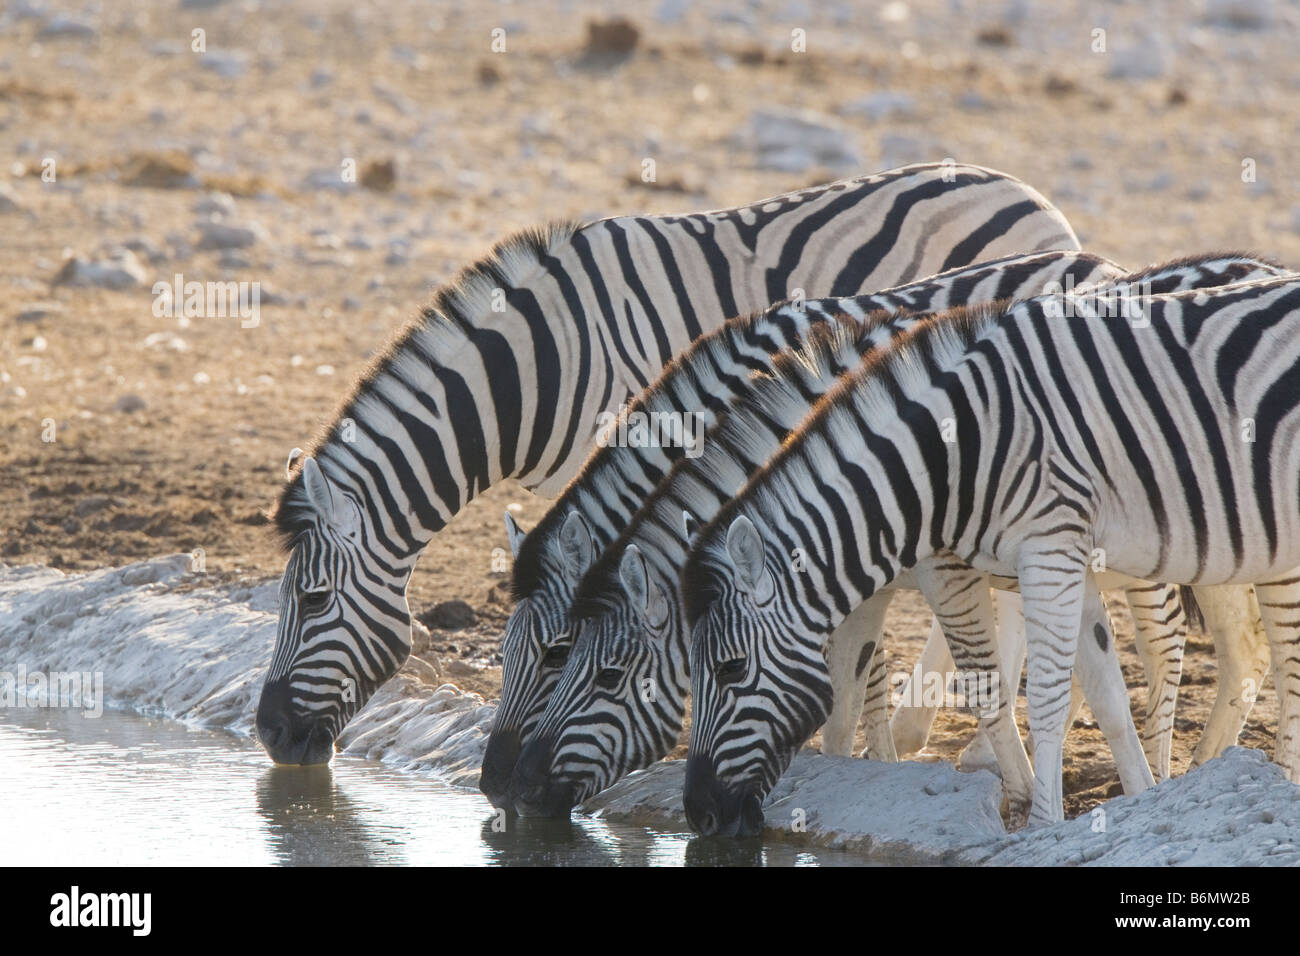 Plains Zebras Drinking at Waterhole, Etosha National Park, Namibia Stock Photo